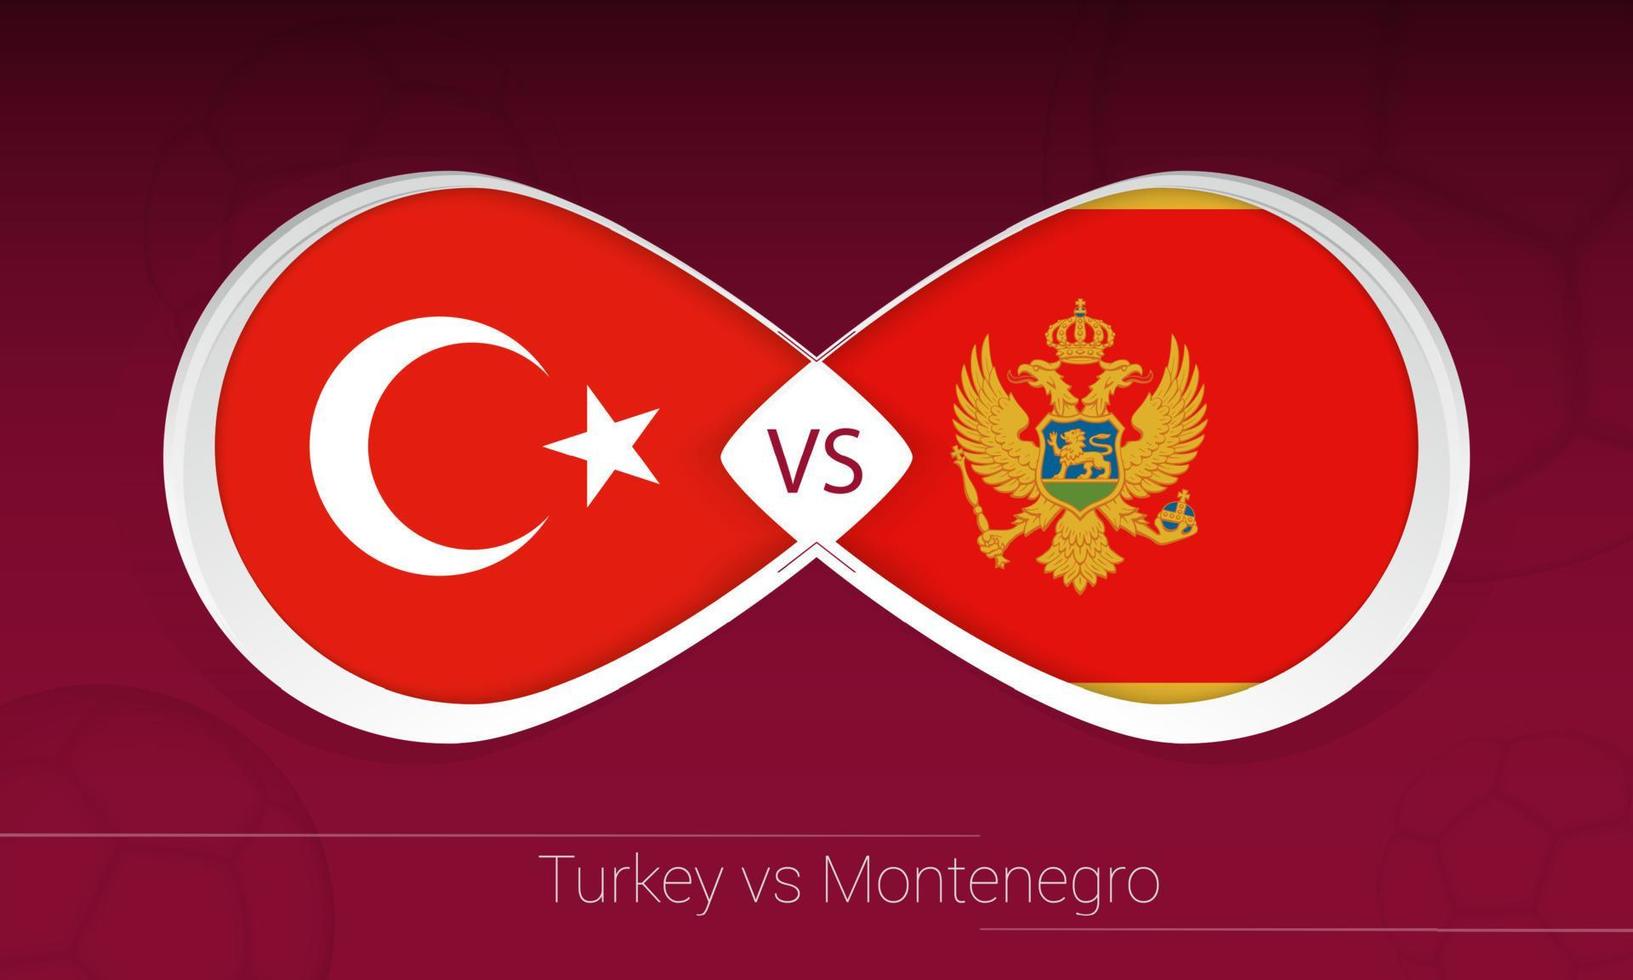 türkei gegen montenegro im fußballwettbewerb, gruppe g. gegen Symbol auf Fußballhintergrund. vektor